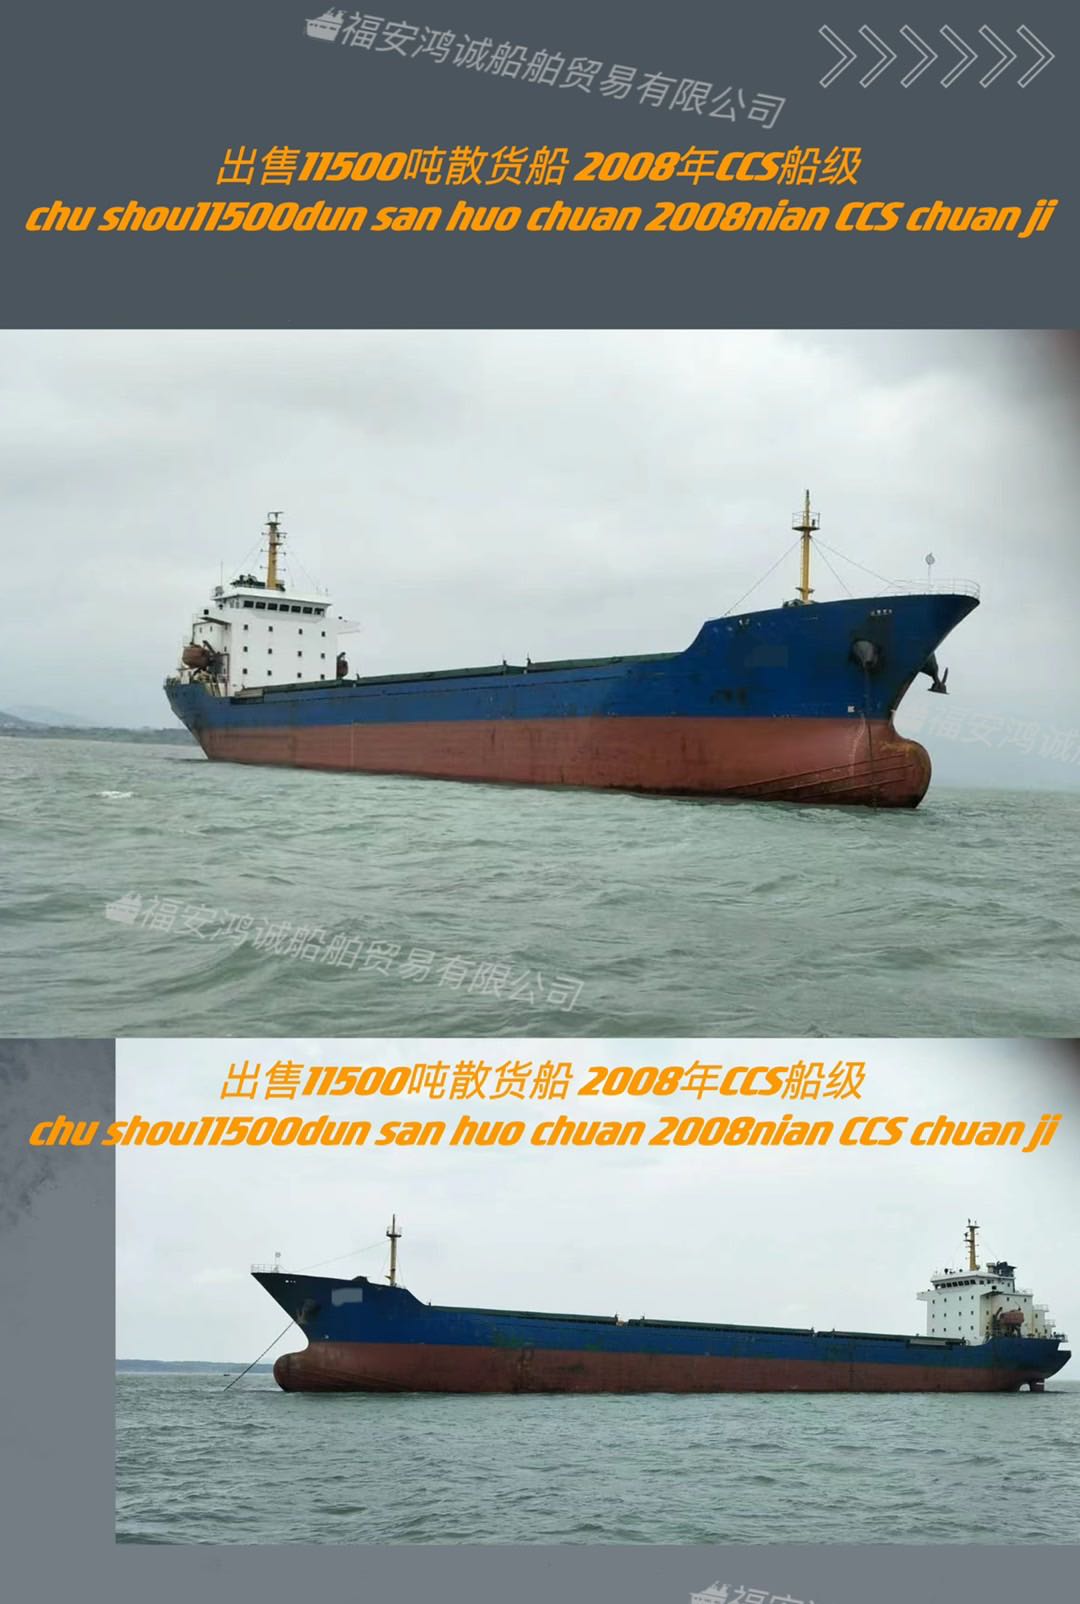 出售11500吨散货船 2008年11月浙江建造